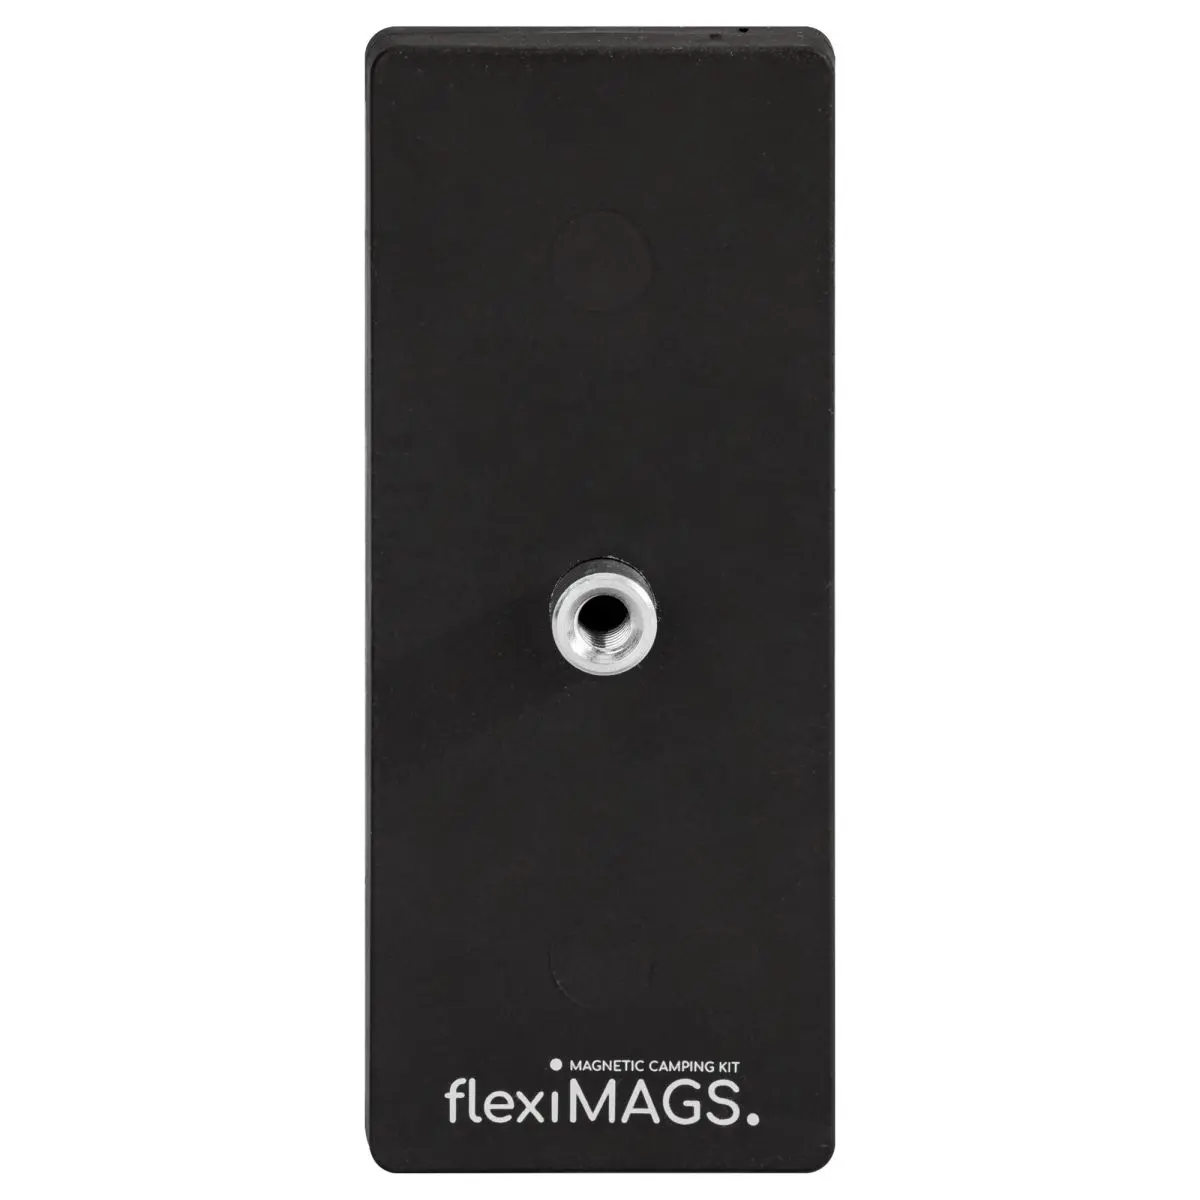 Magnet rechteckig flexiMAGS - Haltekraft: 57 kg, 2er Set